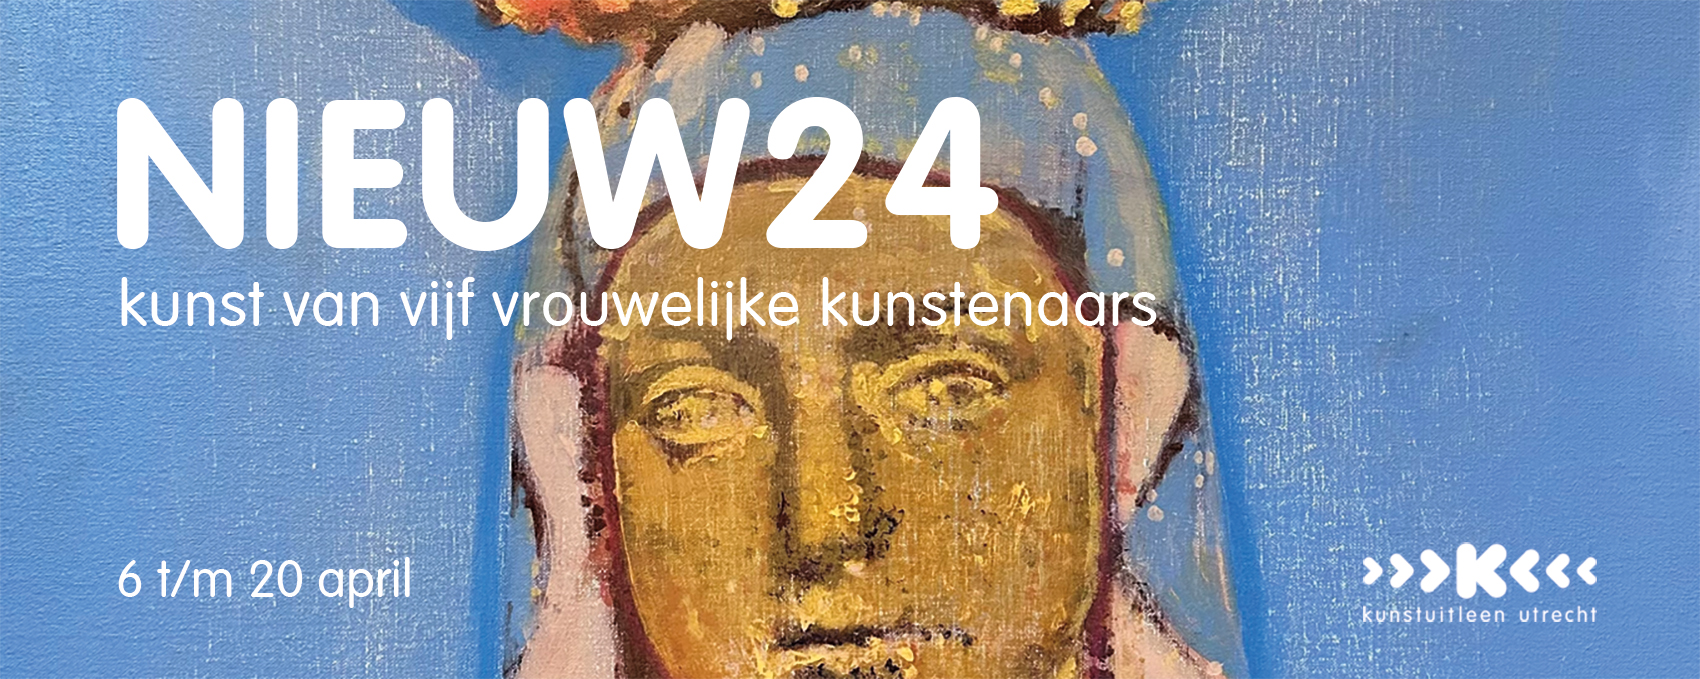 Kunstuitleen Utrecht / NIEUW24